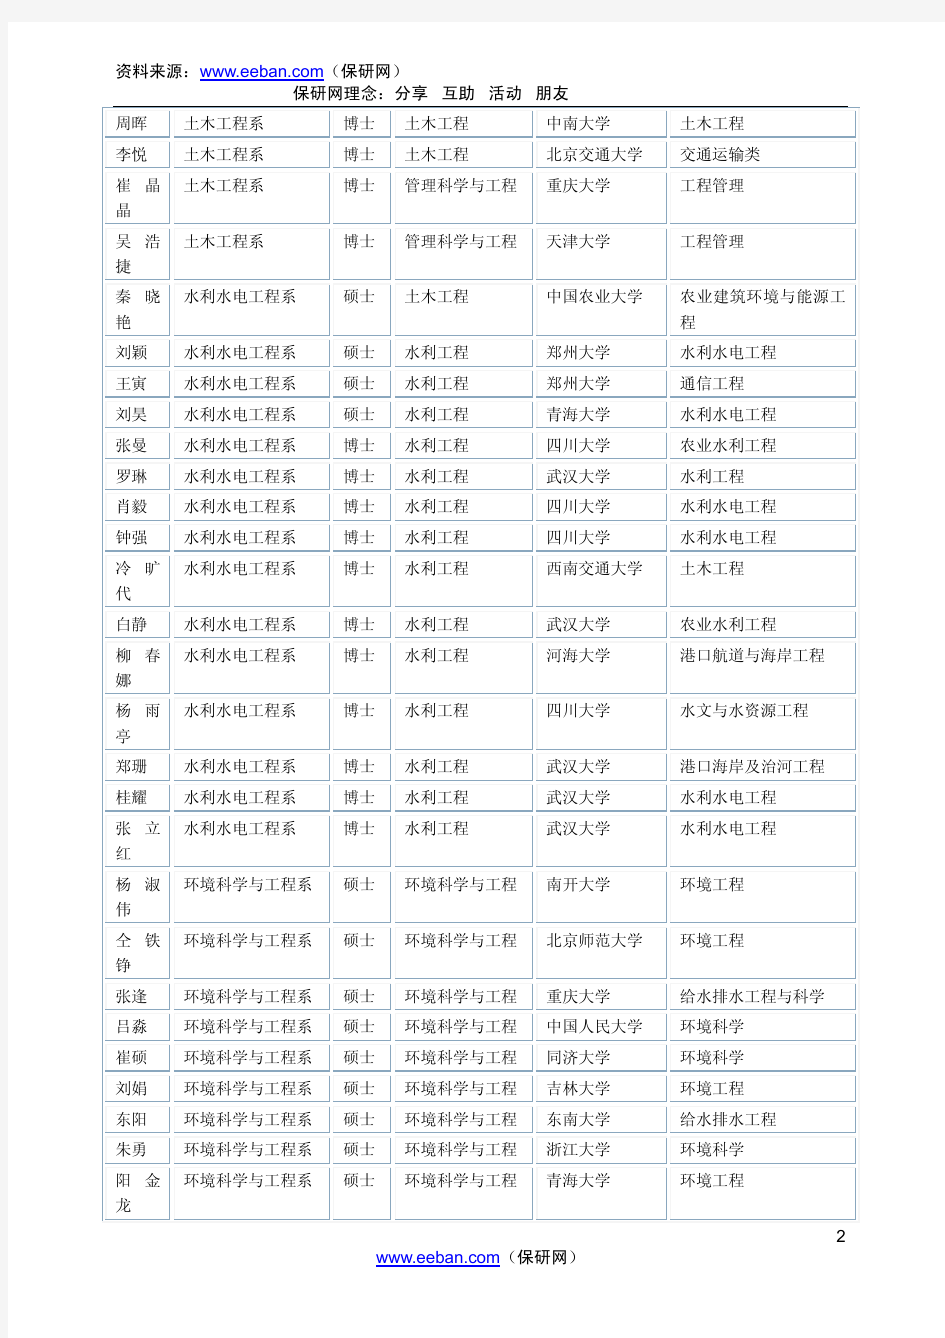 2008年清华大学接收校外免试生拟录取名单